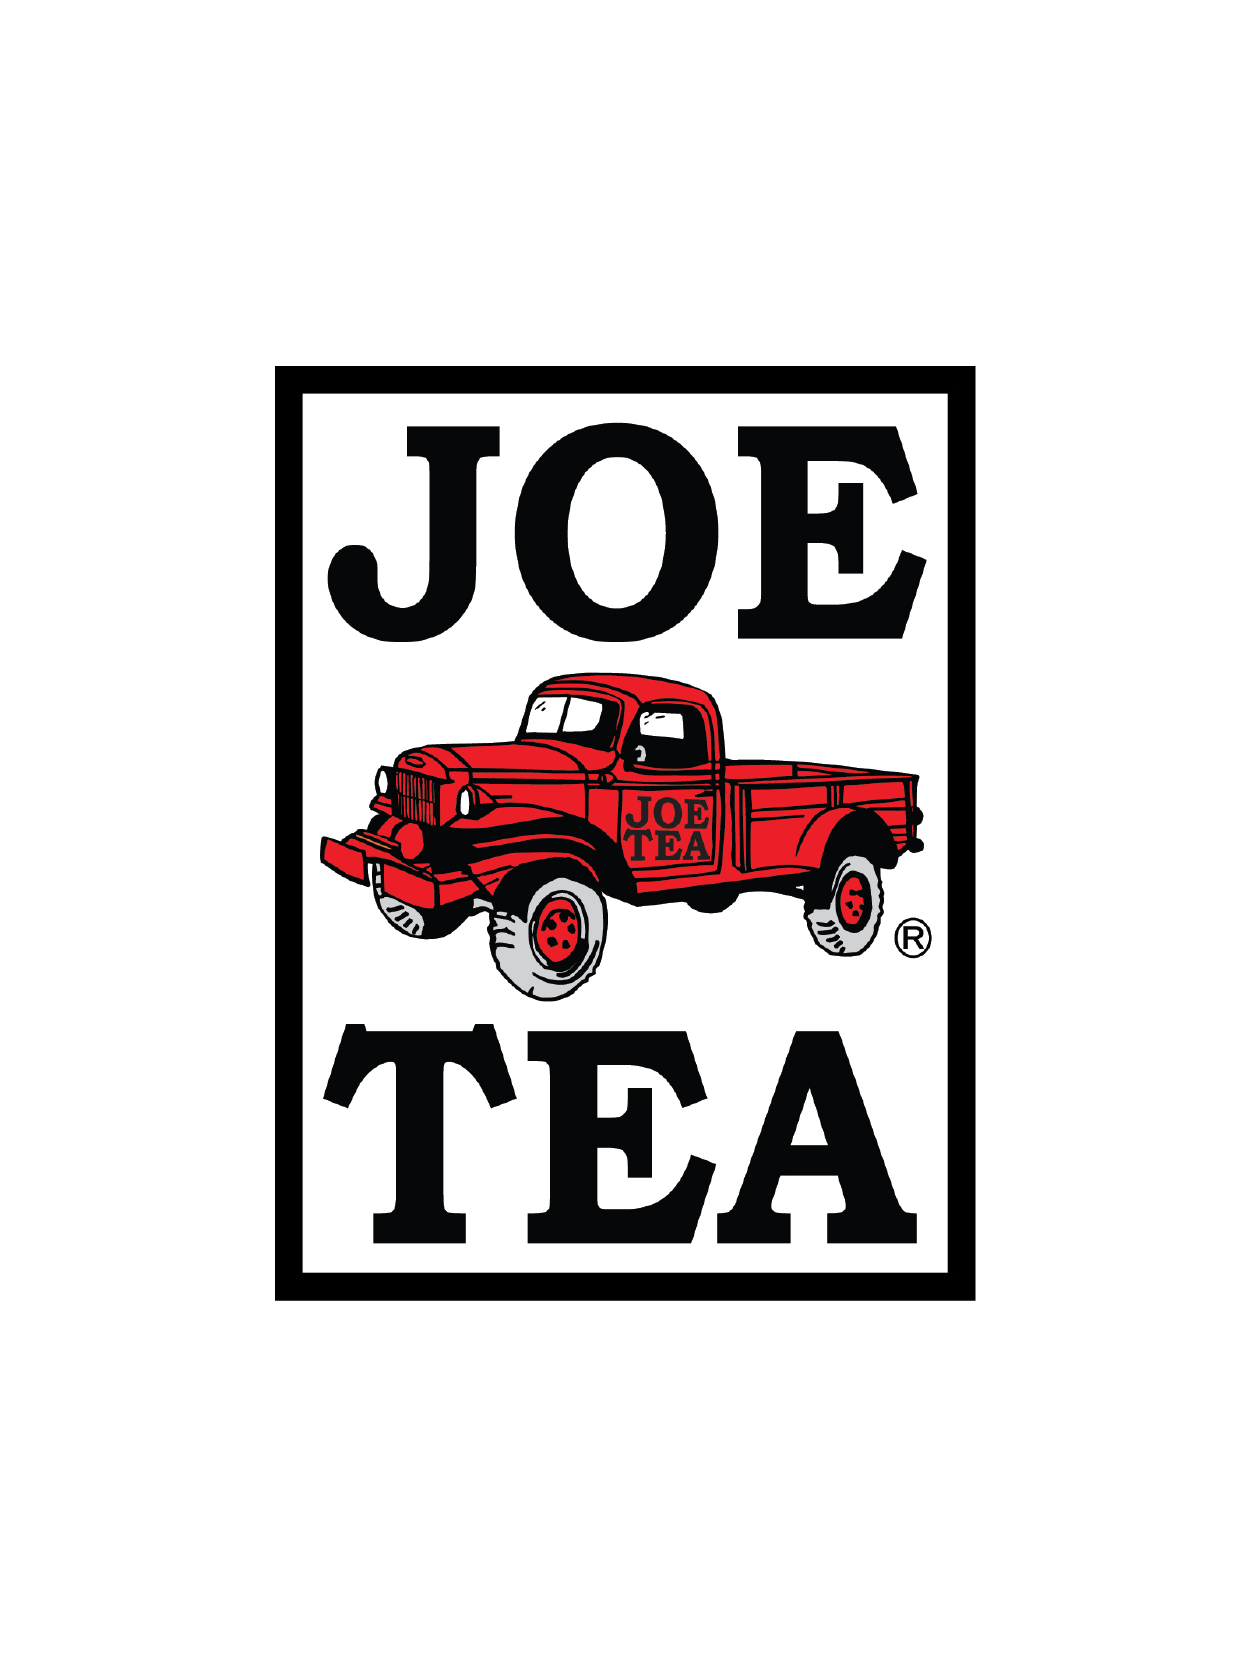 Joe Tea logo - Rectangle